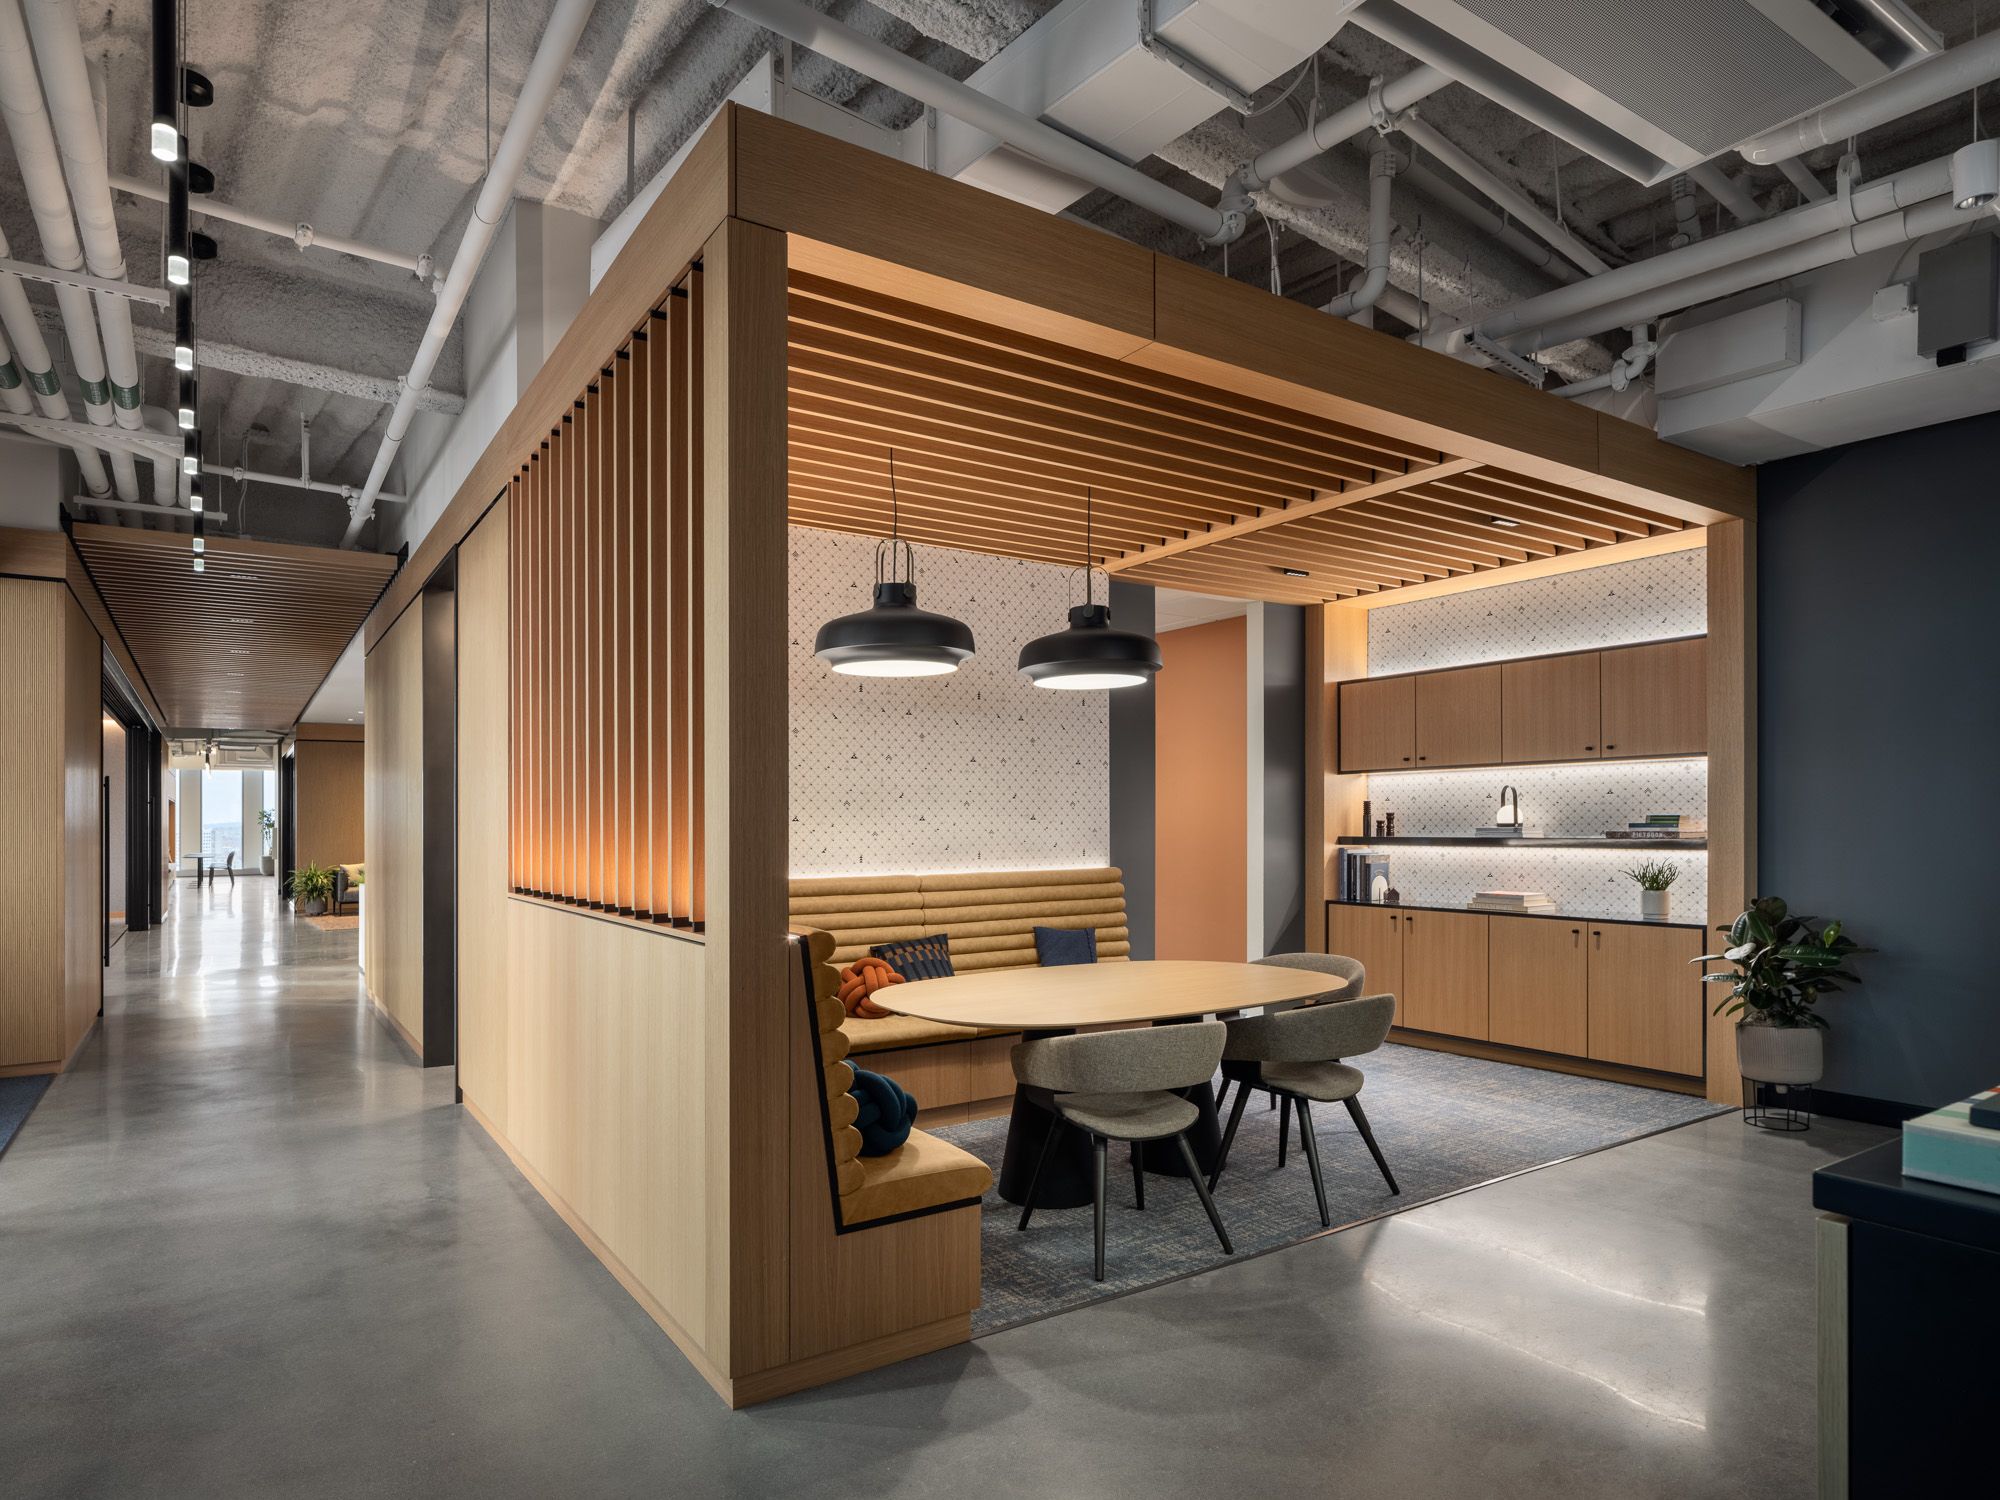 图片[9]|BioMed房地产办公室-波士顿|ART-Arrakis | 建筑室内设计的创新与灵感